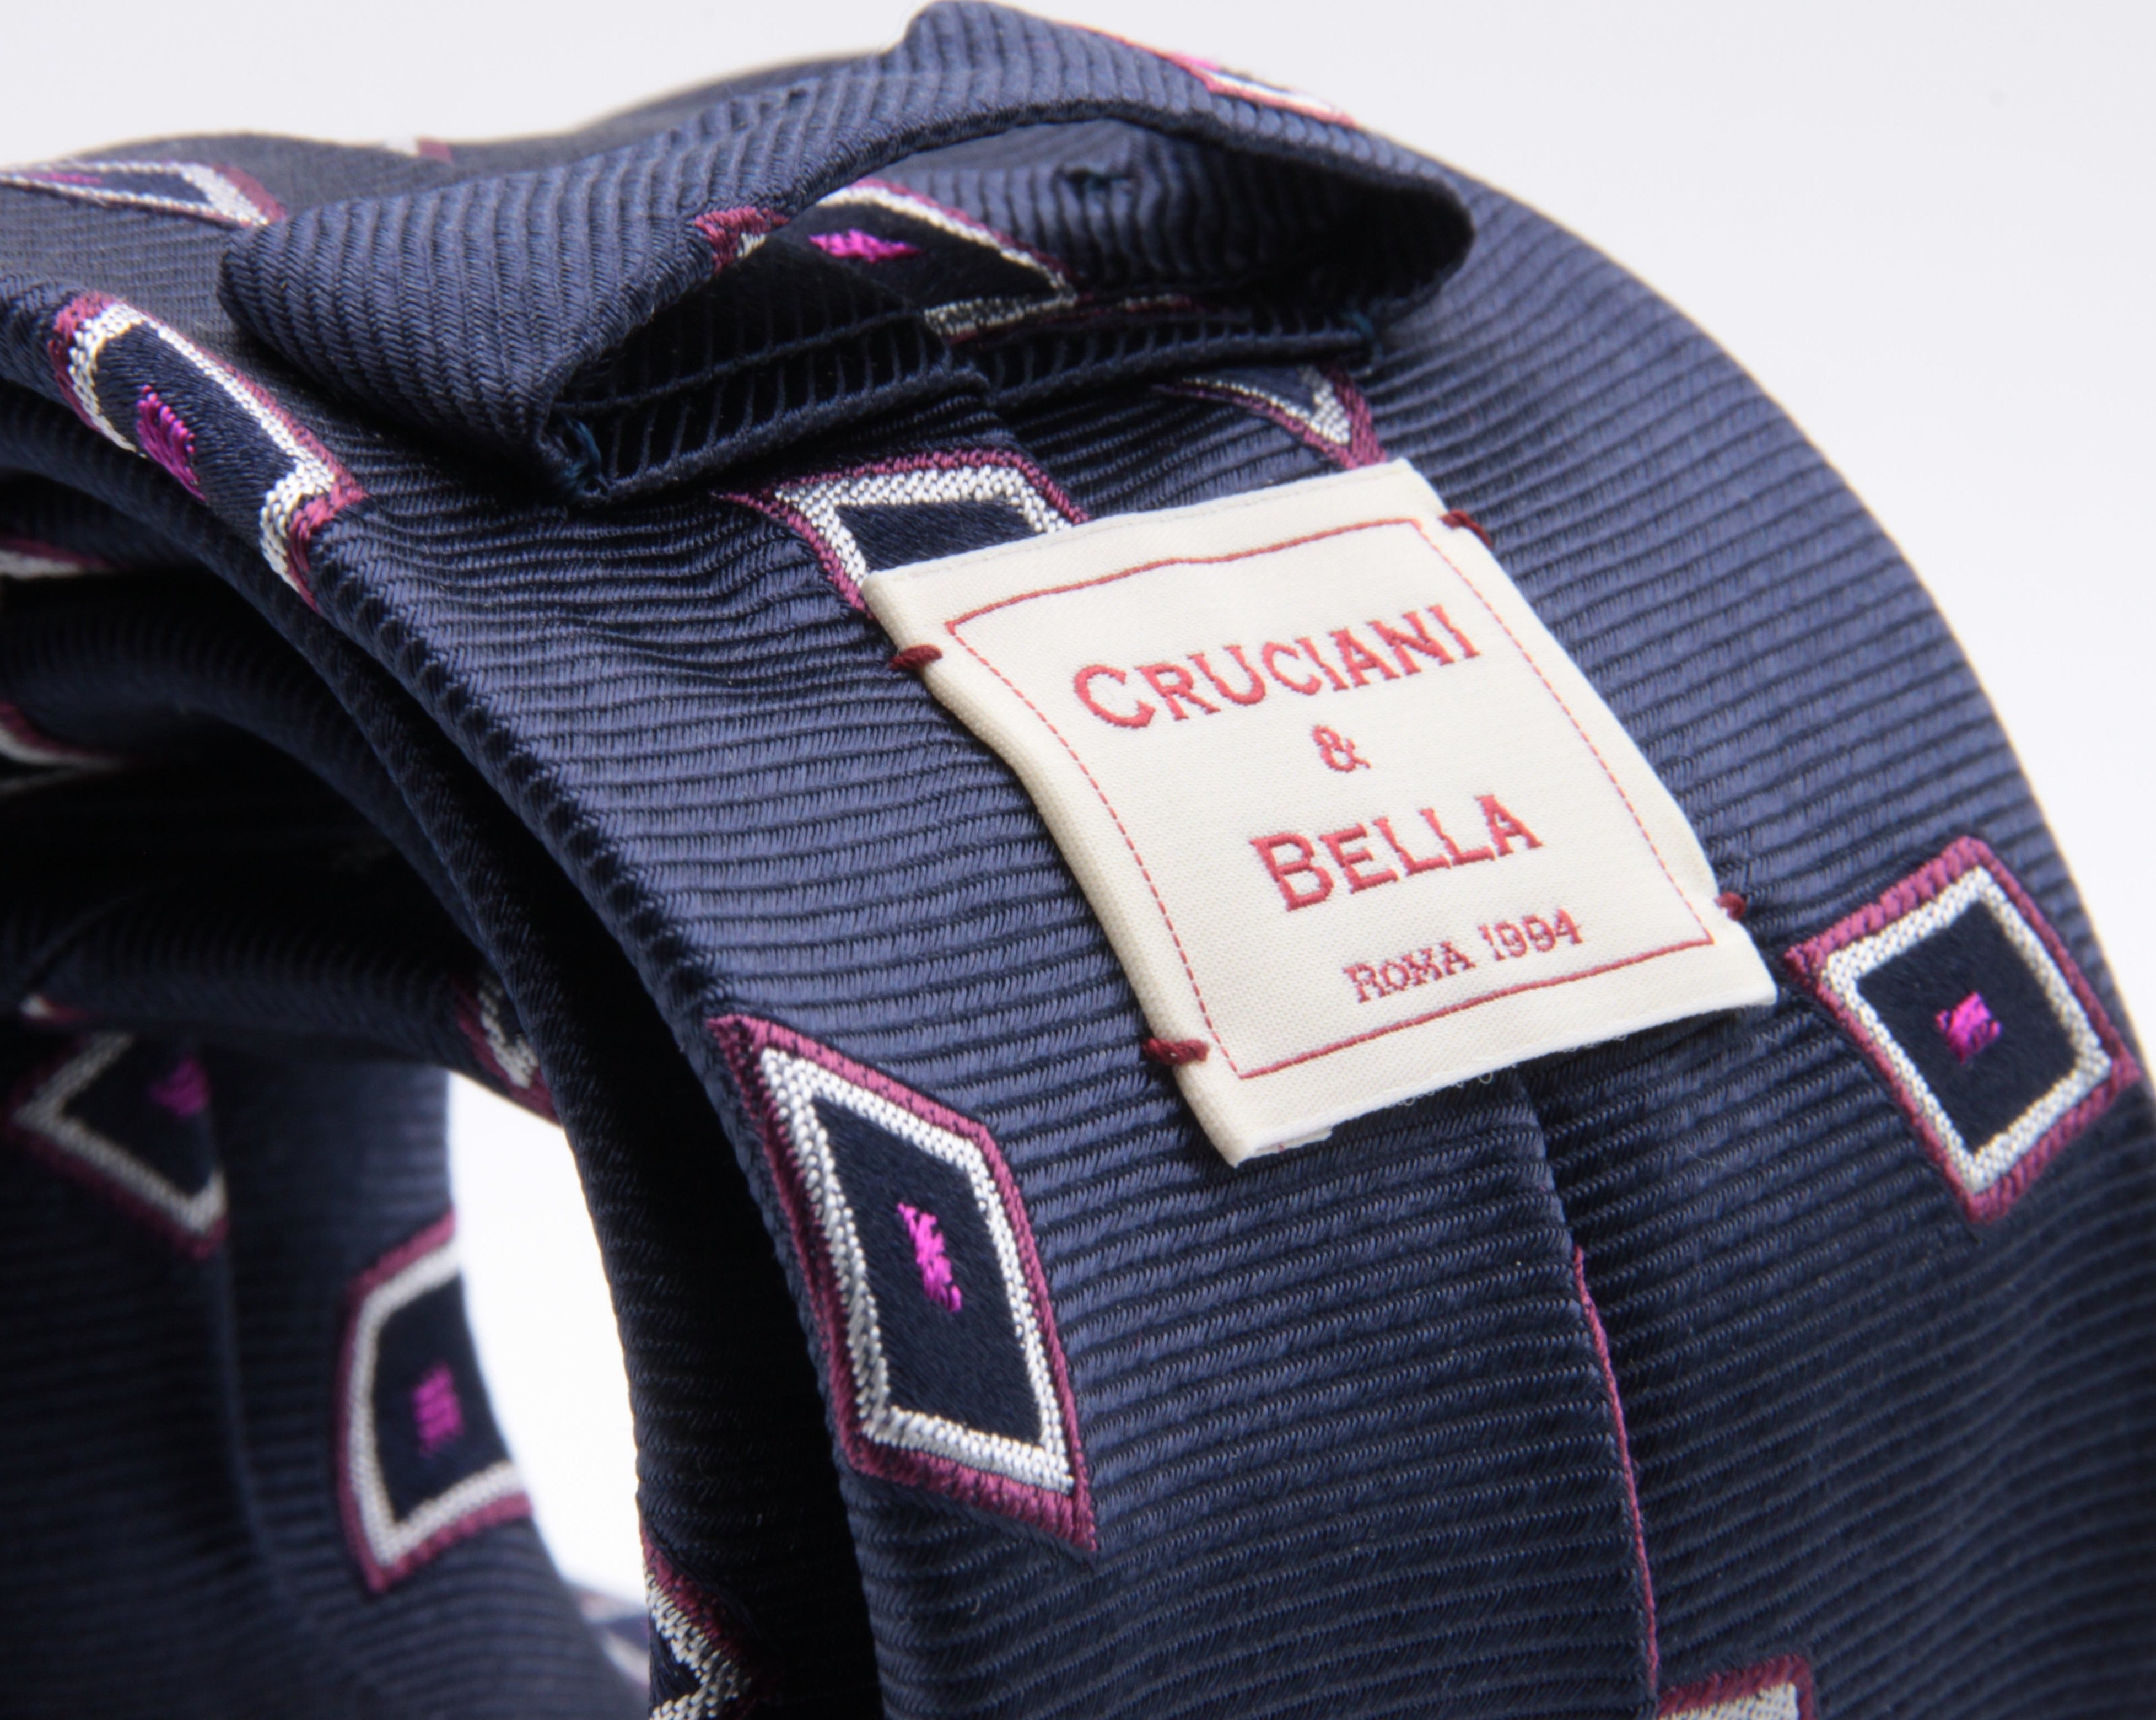 Cruciani & Bella 100% Silk Jacquard  Blue, Fuchsia and White Lozenge Tie Handmade in Italy 8 cm x 150 cm #4451